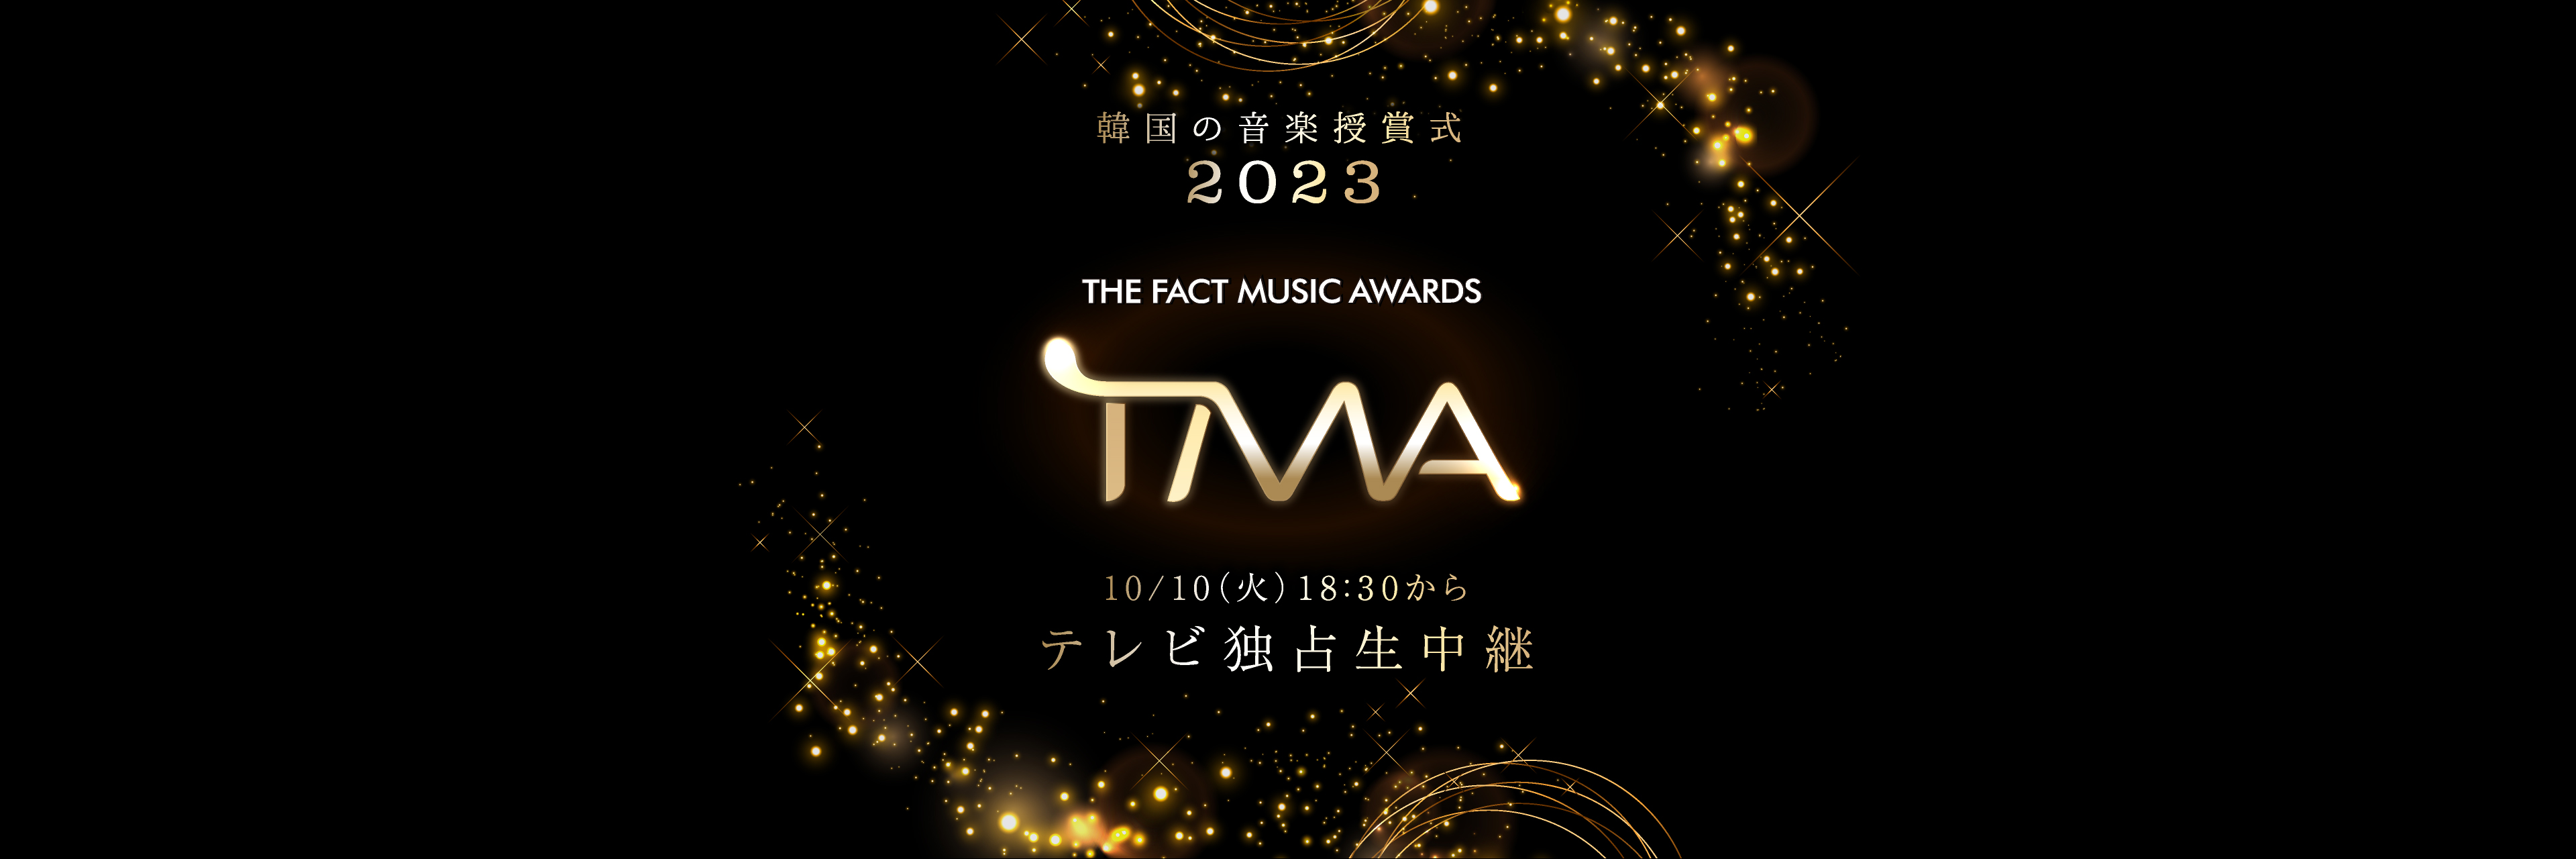 韓国の音楽授賞式 2023 THE FACT MUSIC AWARDS (TMA) 10/10( 火) 18:X30 からテレビ独占生中継